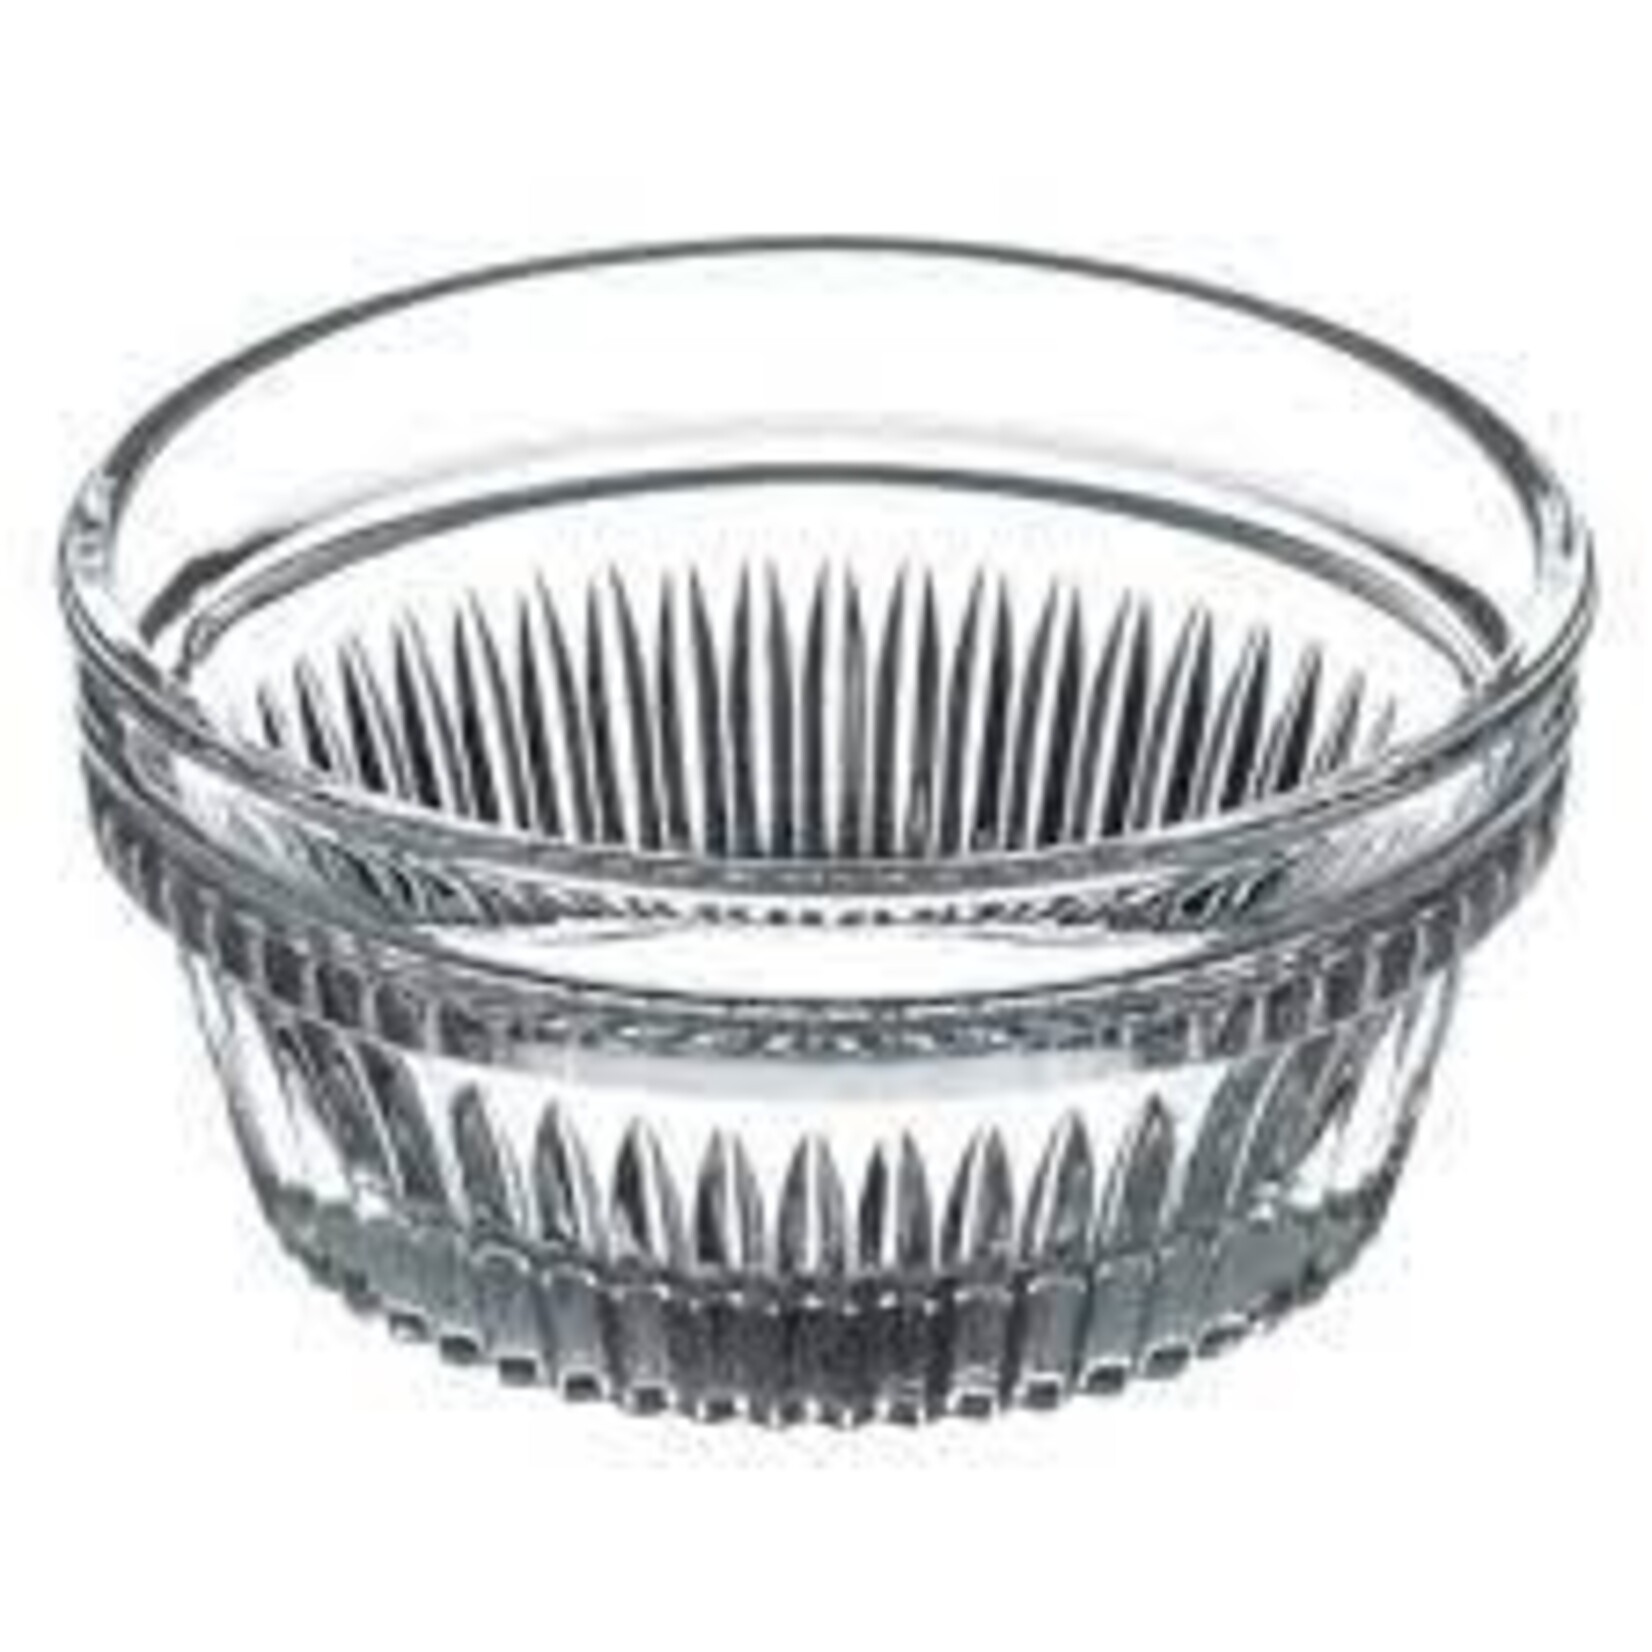 Pasabache - Turkey 53568 Home 3" glass bowl remakin 48/case 1.5 oz